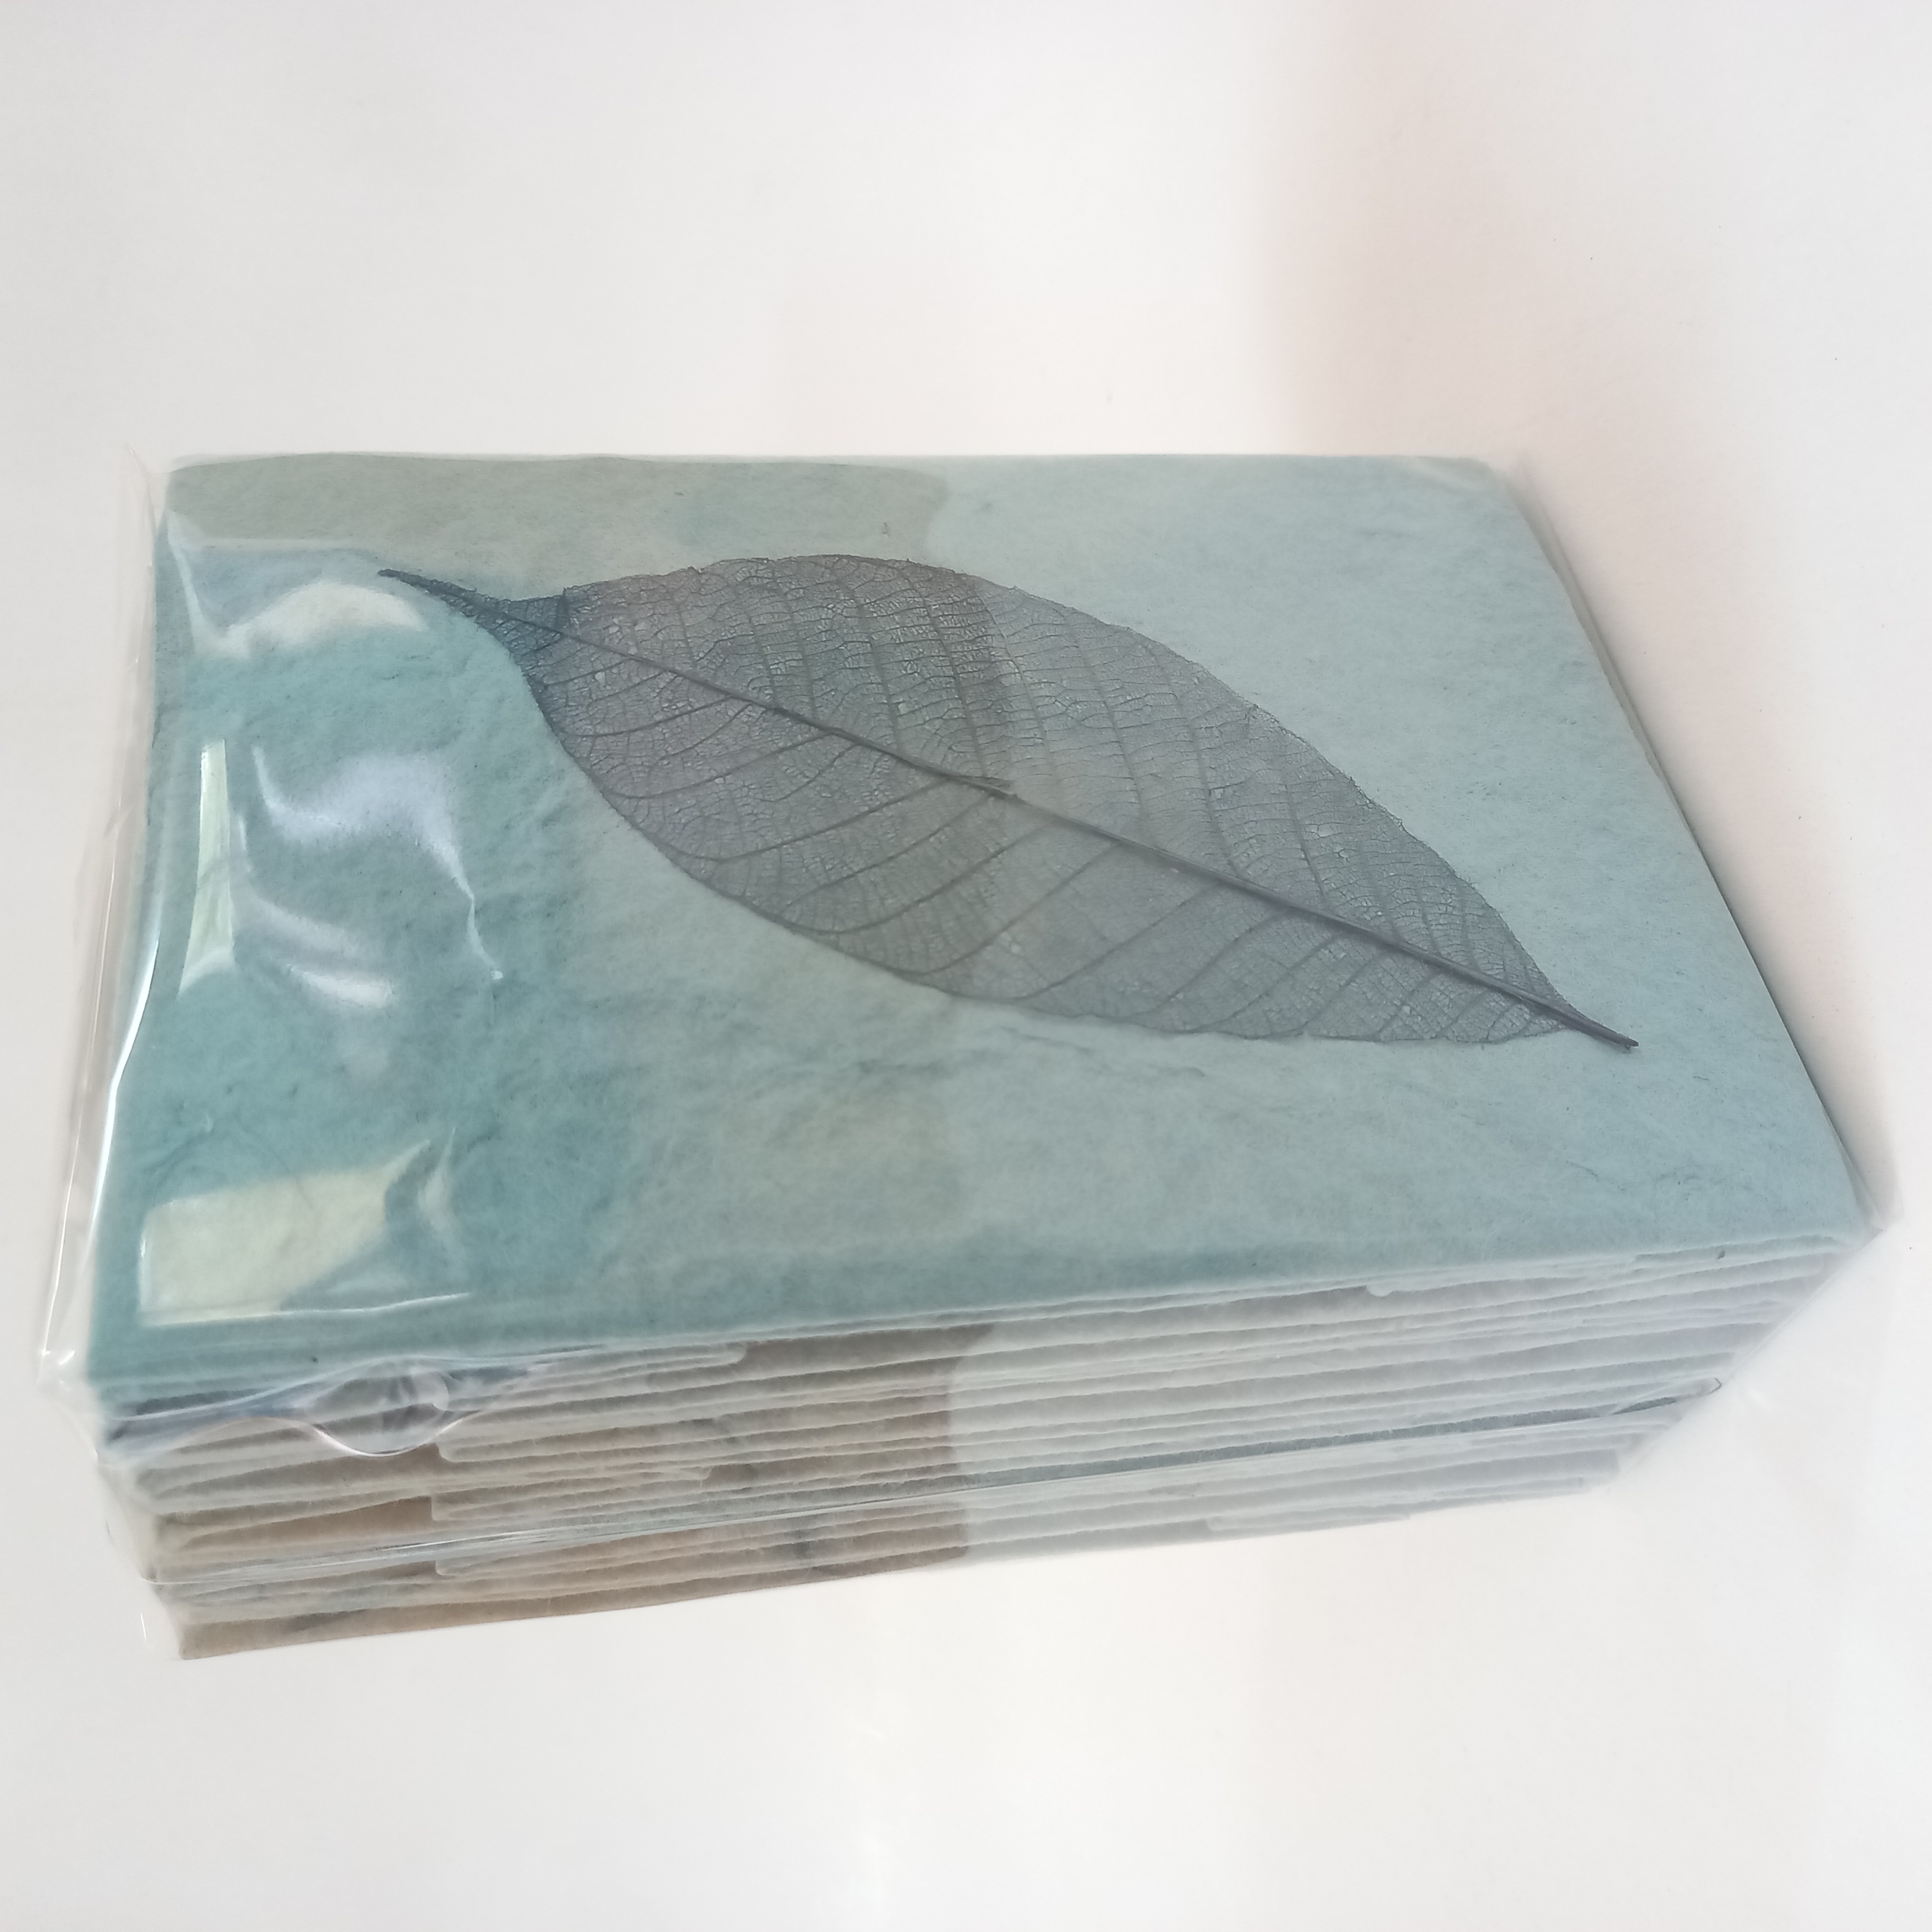 Paper bag navy blue size 16x11.5x5 cm